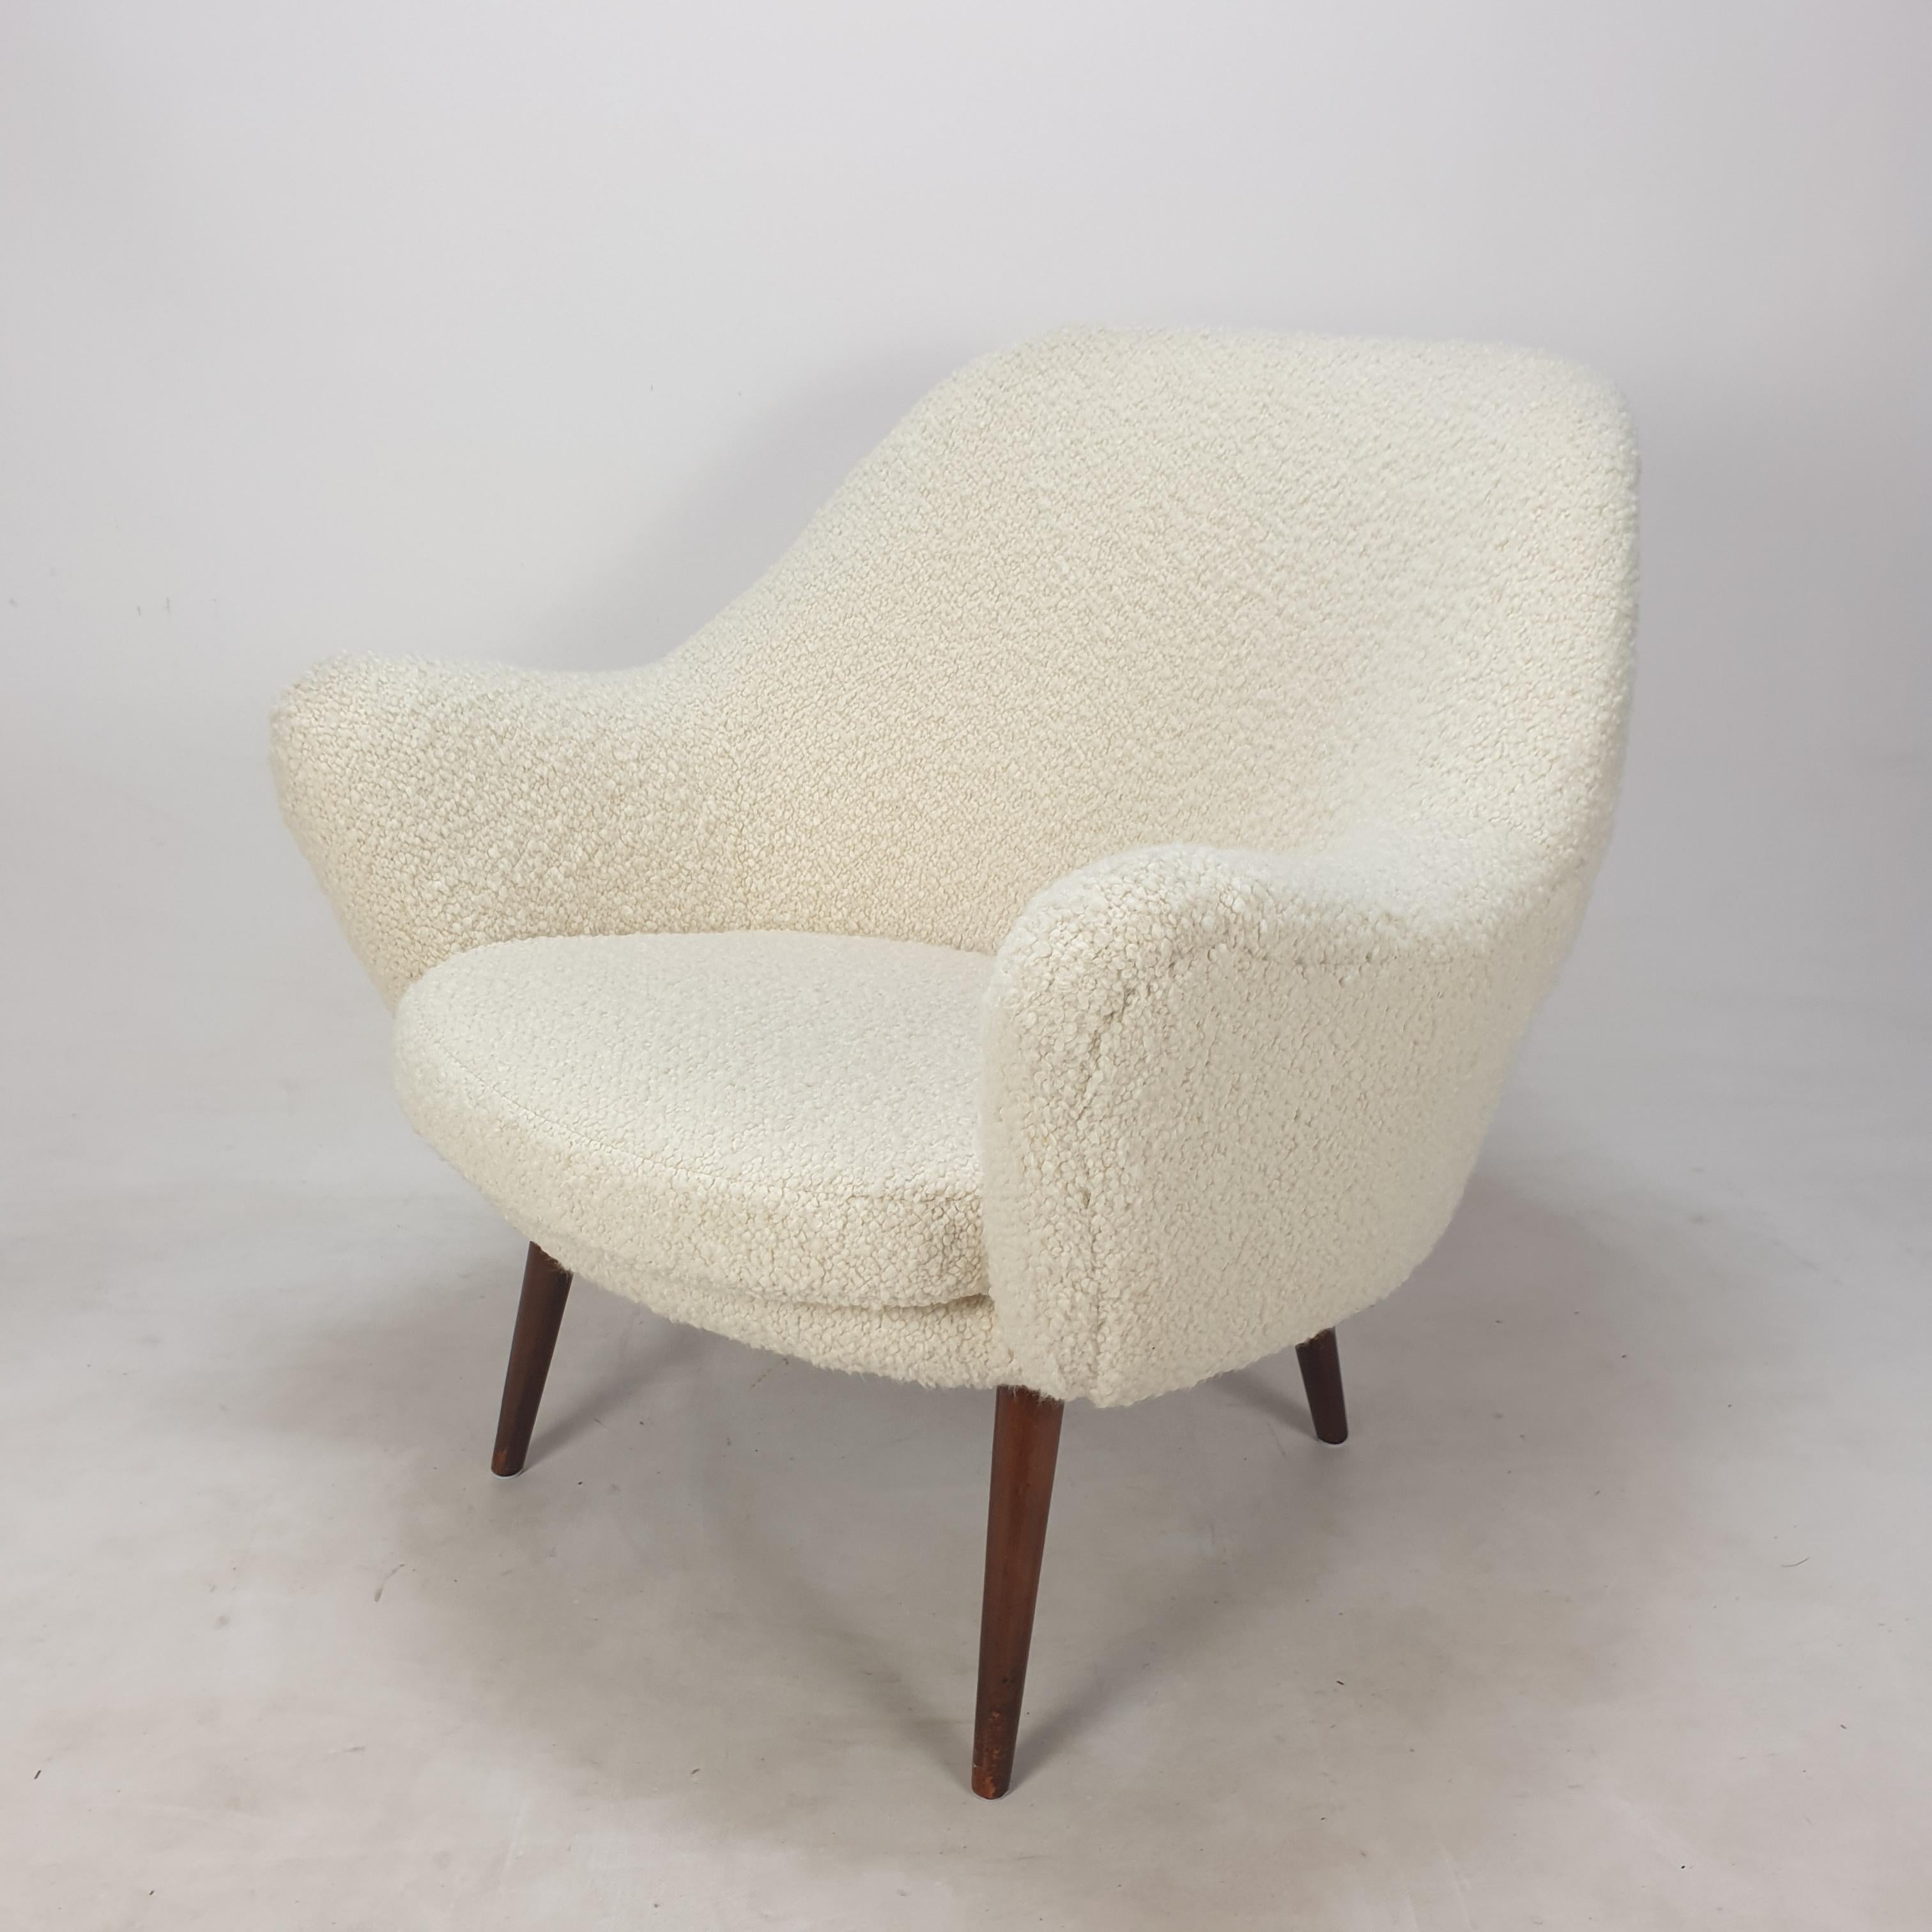 Atemberaubender Loungesessel, entworfen und hergestellt in Skandinavien, 1950er Jahre. 
Er hat einen sehr bequemen Sitz.

Der Stuhl wurde gerade mit neuem Schaumstoff und neuem Stoff restauriert und ist daher in perfektem Zustand.

Er ist mit